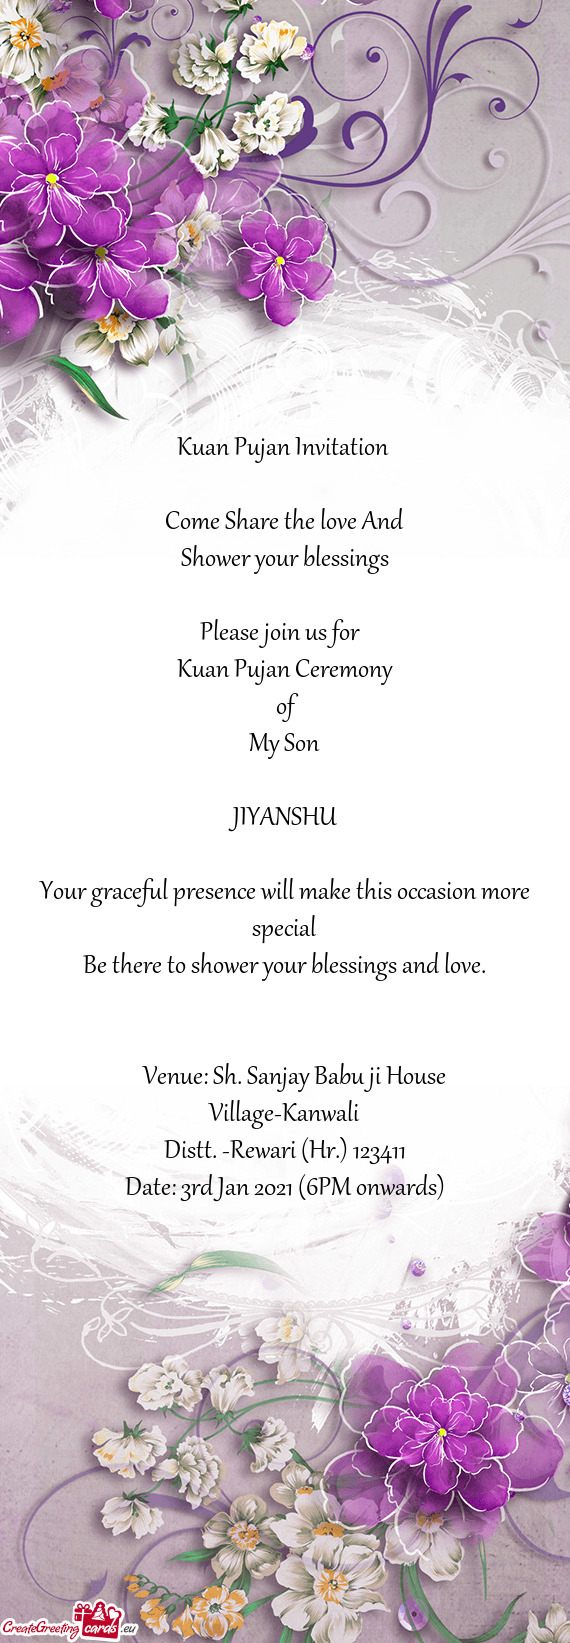 Venue: Sh. Sanjay Babu ji House